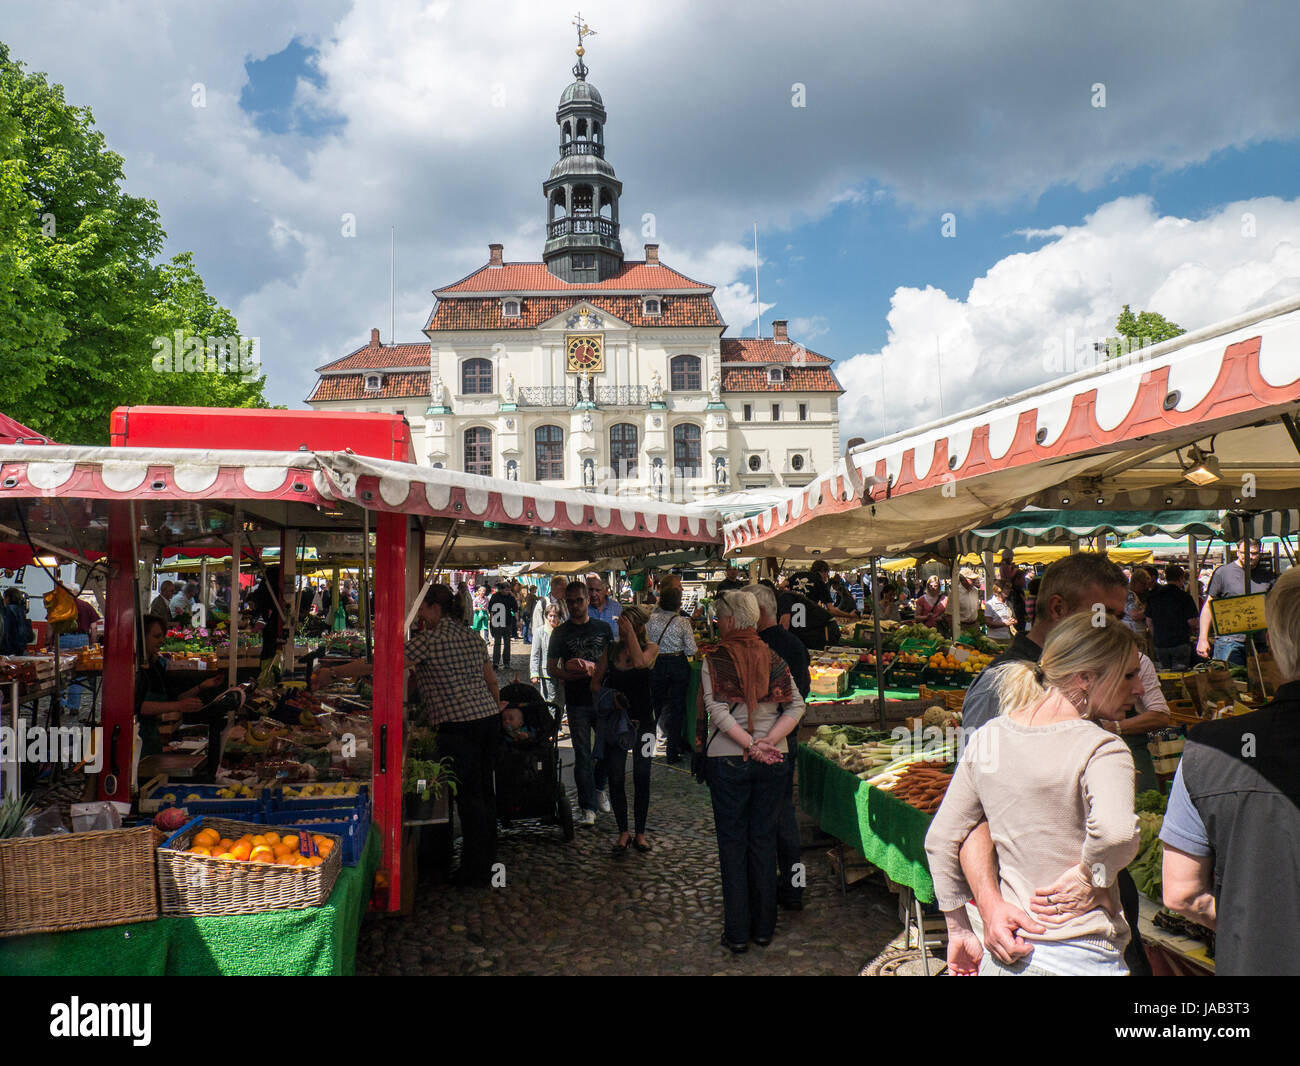 La rue du marché sur place, à Lüneburg Niedersachsen, Allemagne. Banque D'Images